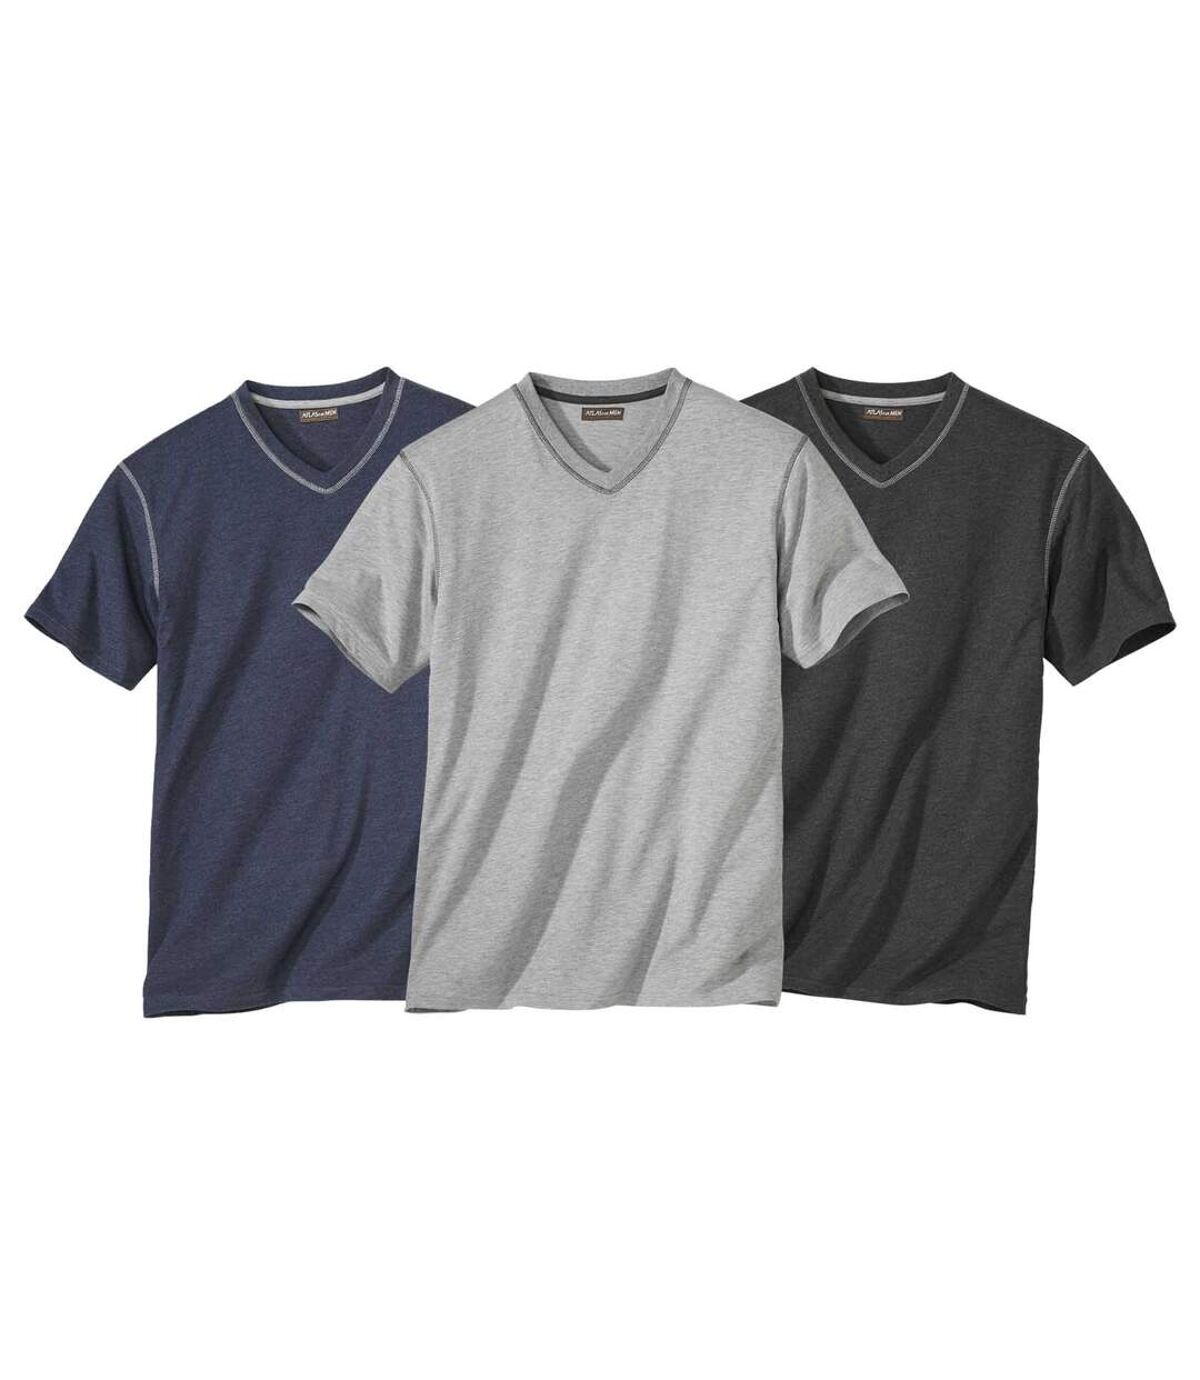 Pack of 3 Men's V-Neck T-Shirts - Grey Navy Charcoal Atlas For Men